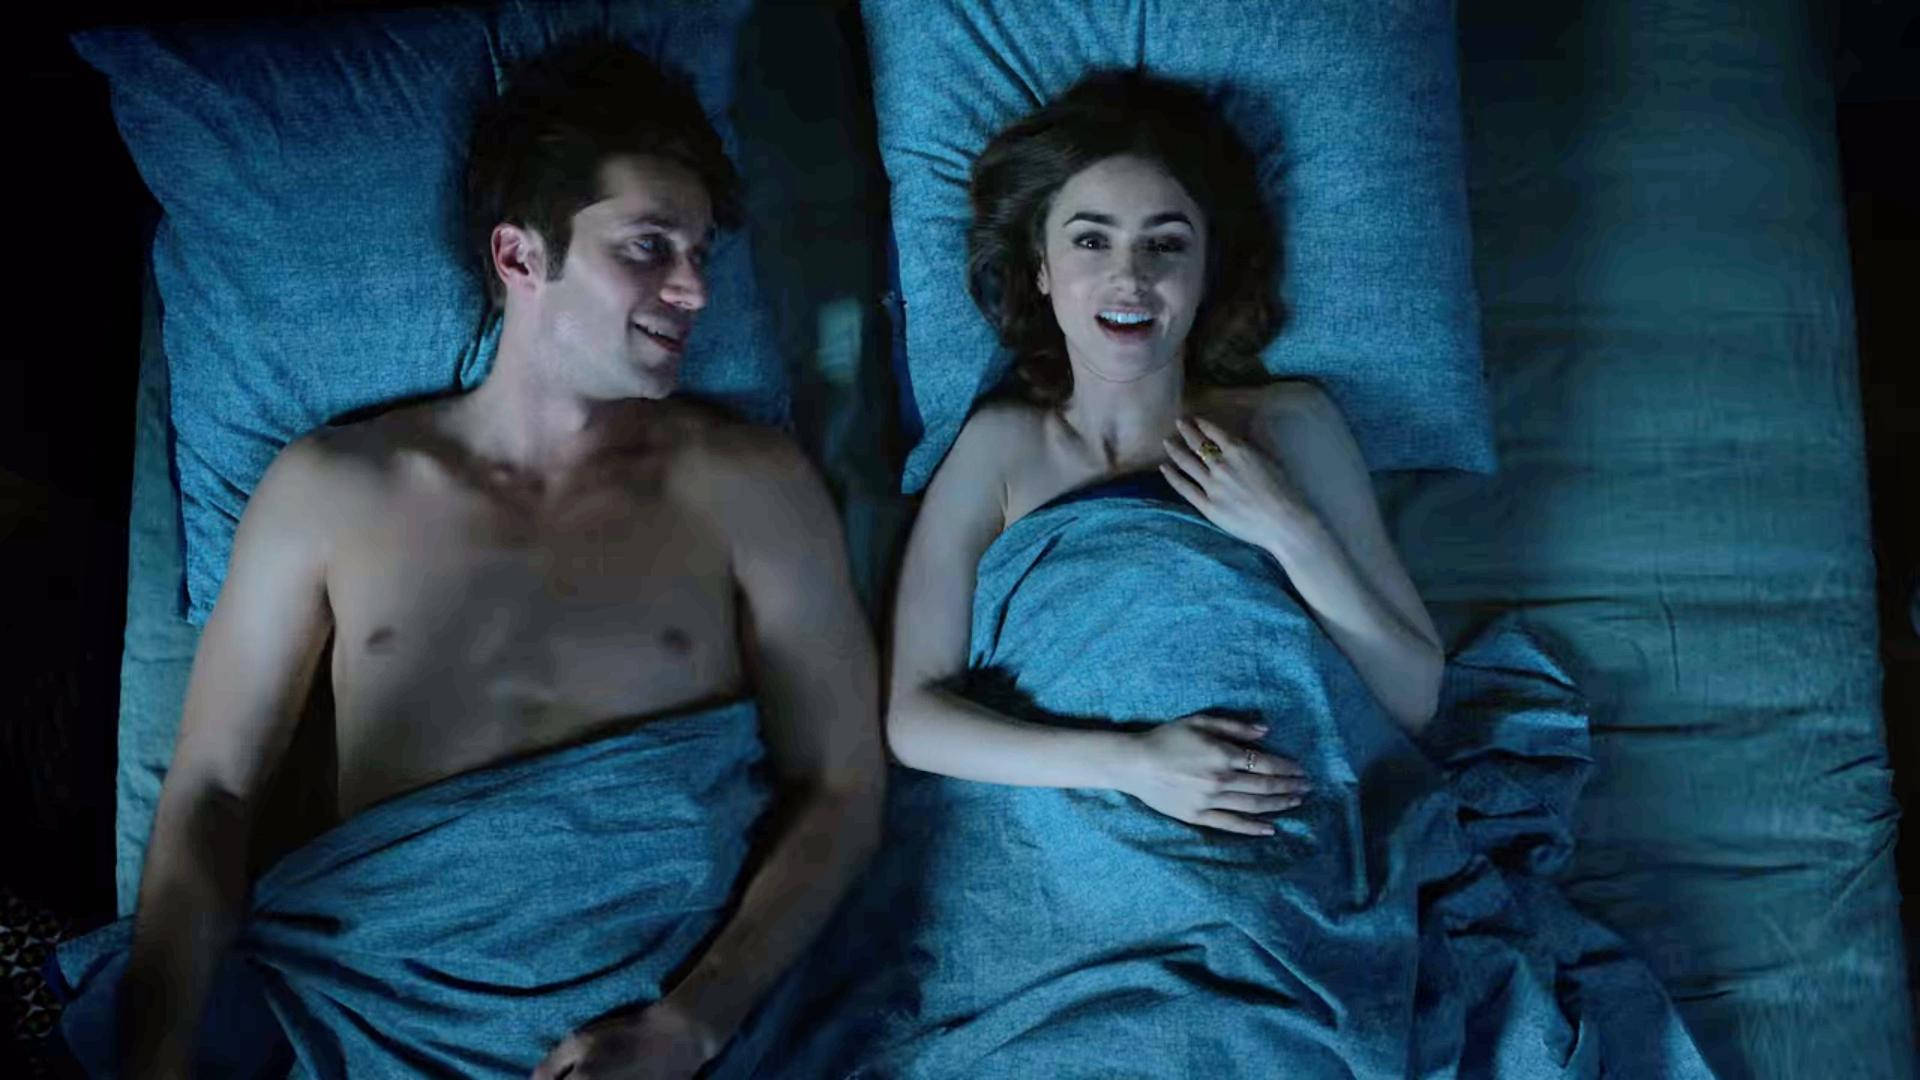 Gabriel&Emily In Bed Wallpaper